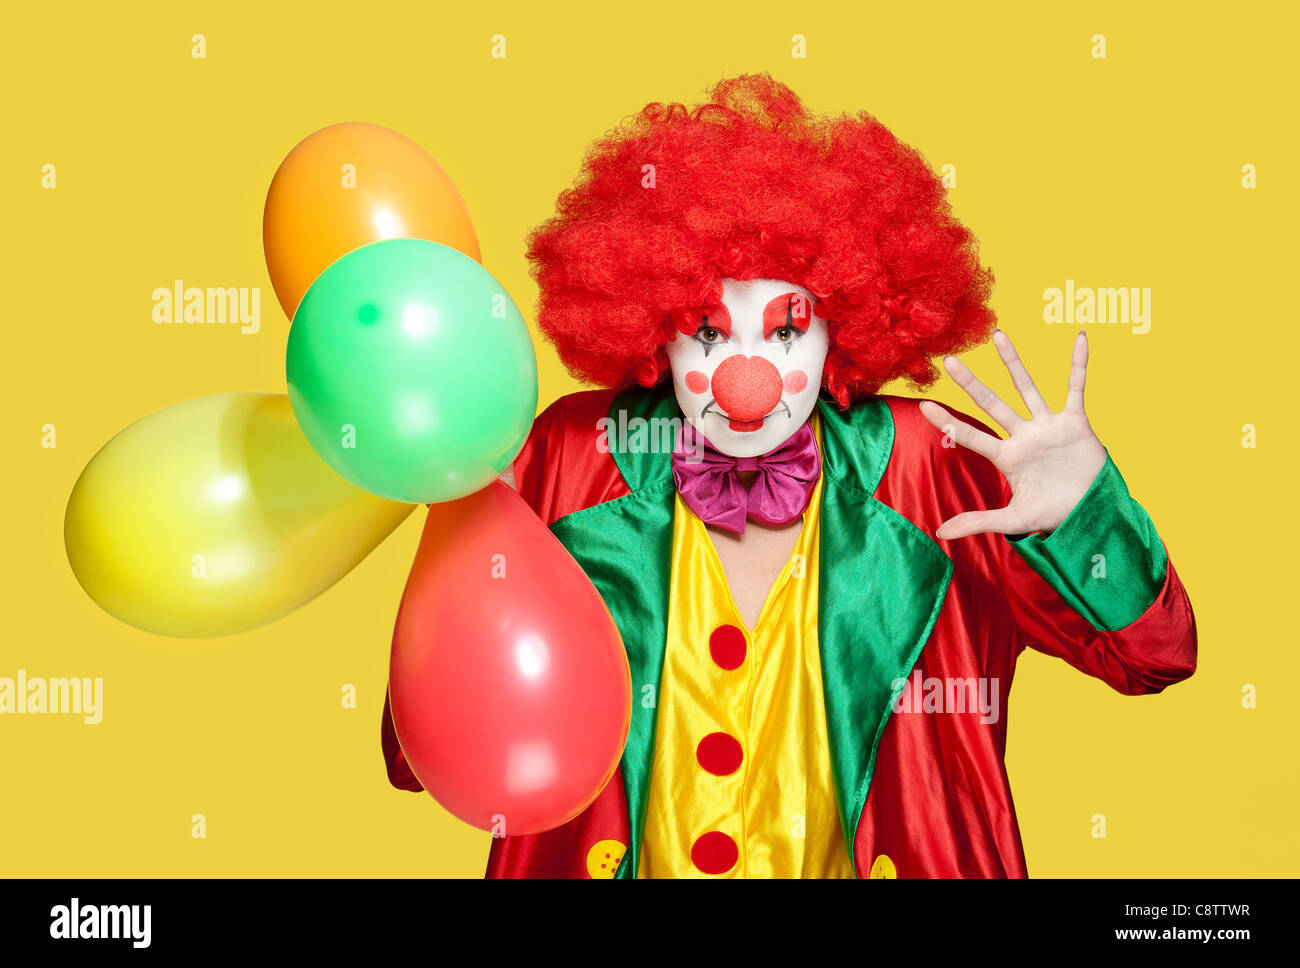 Un clown féminin avec des vêtements colorés et un miroir Banque D'Images